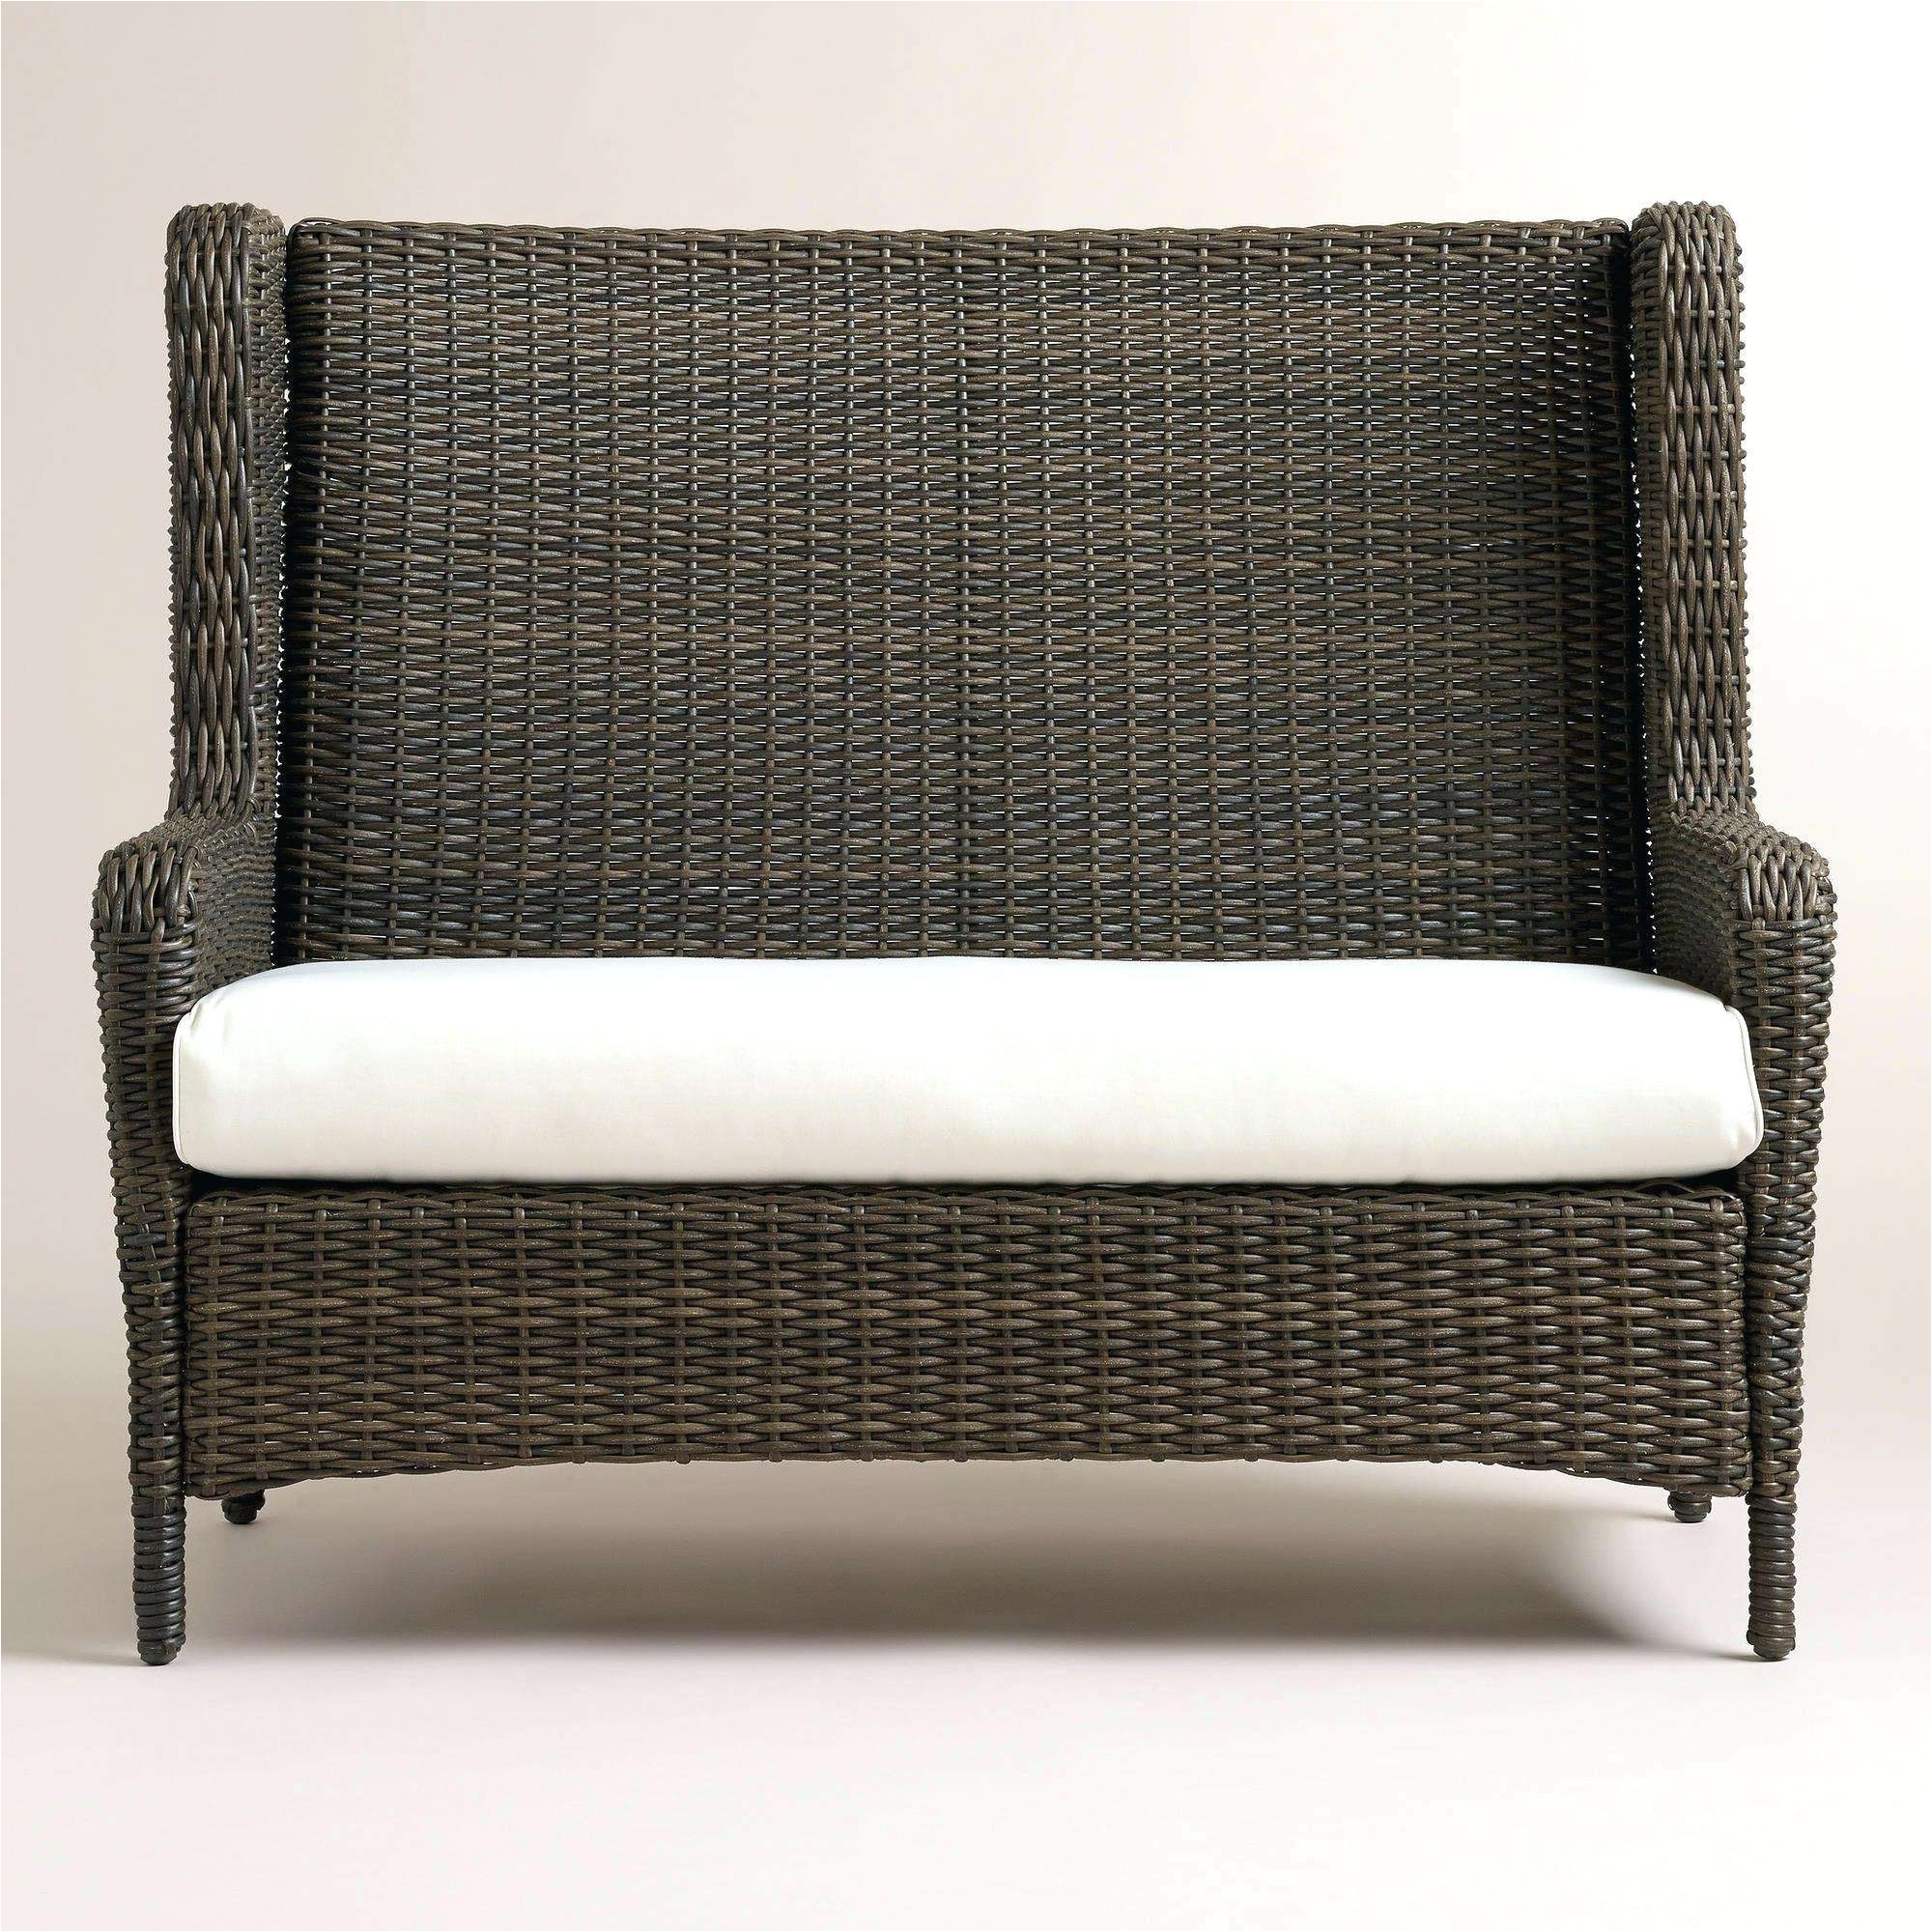 Fainting Chair Covers White Rattan Chair Fresh Broyhill Outdoor Patio Furniture Fresh